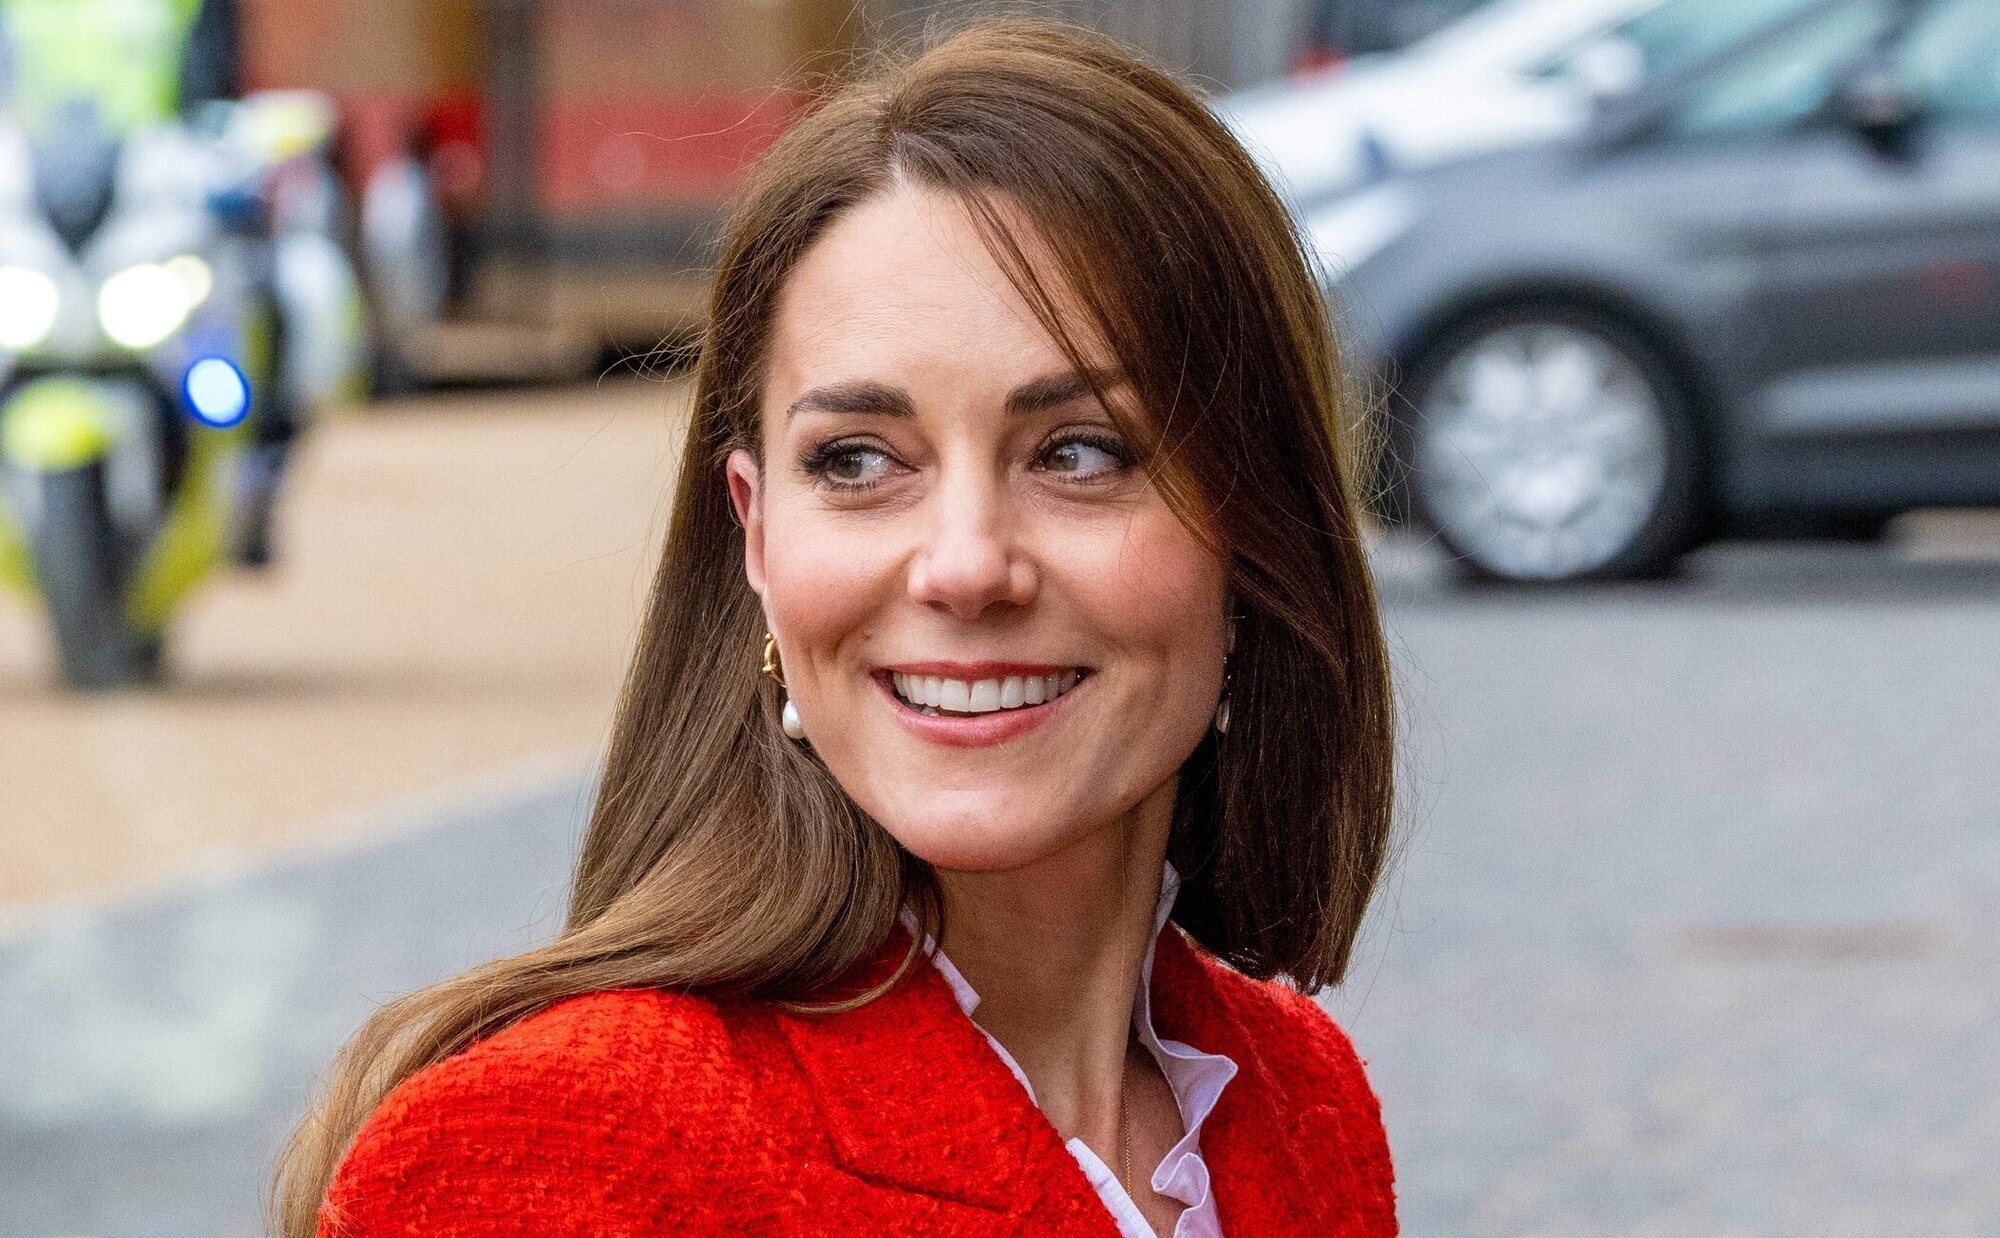 El gesto de Kensington Palace en nombre de Kate Middleton durante su tratamiento contra el cáncer